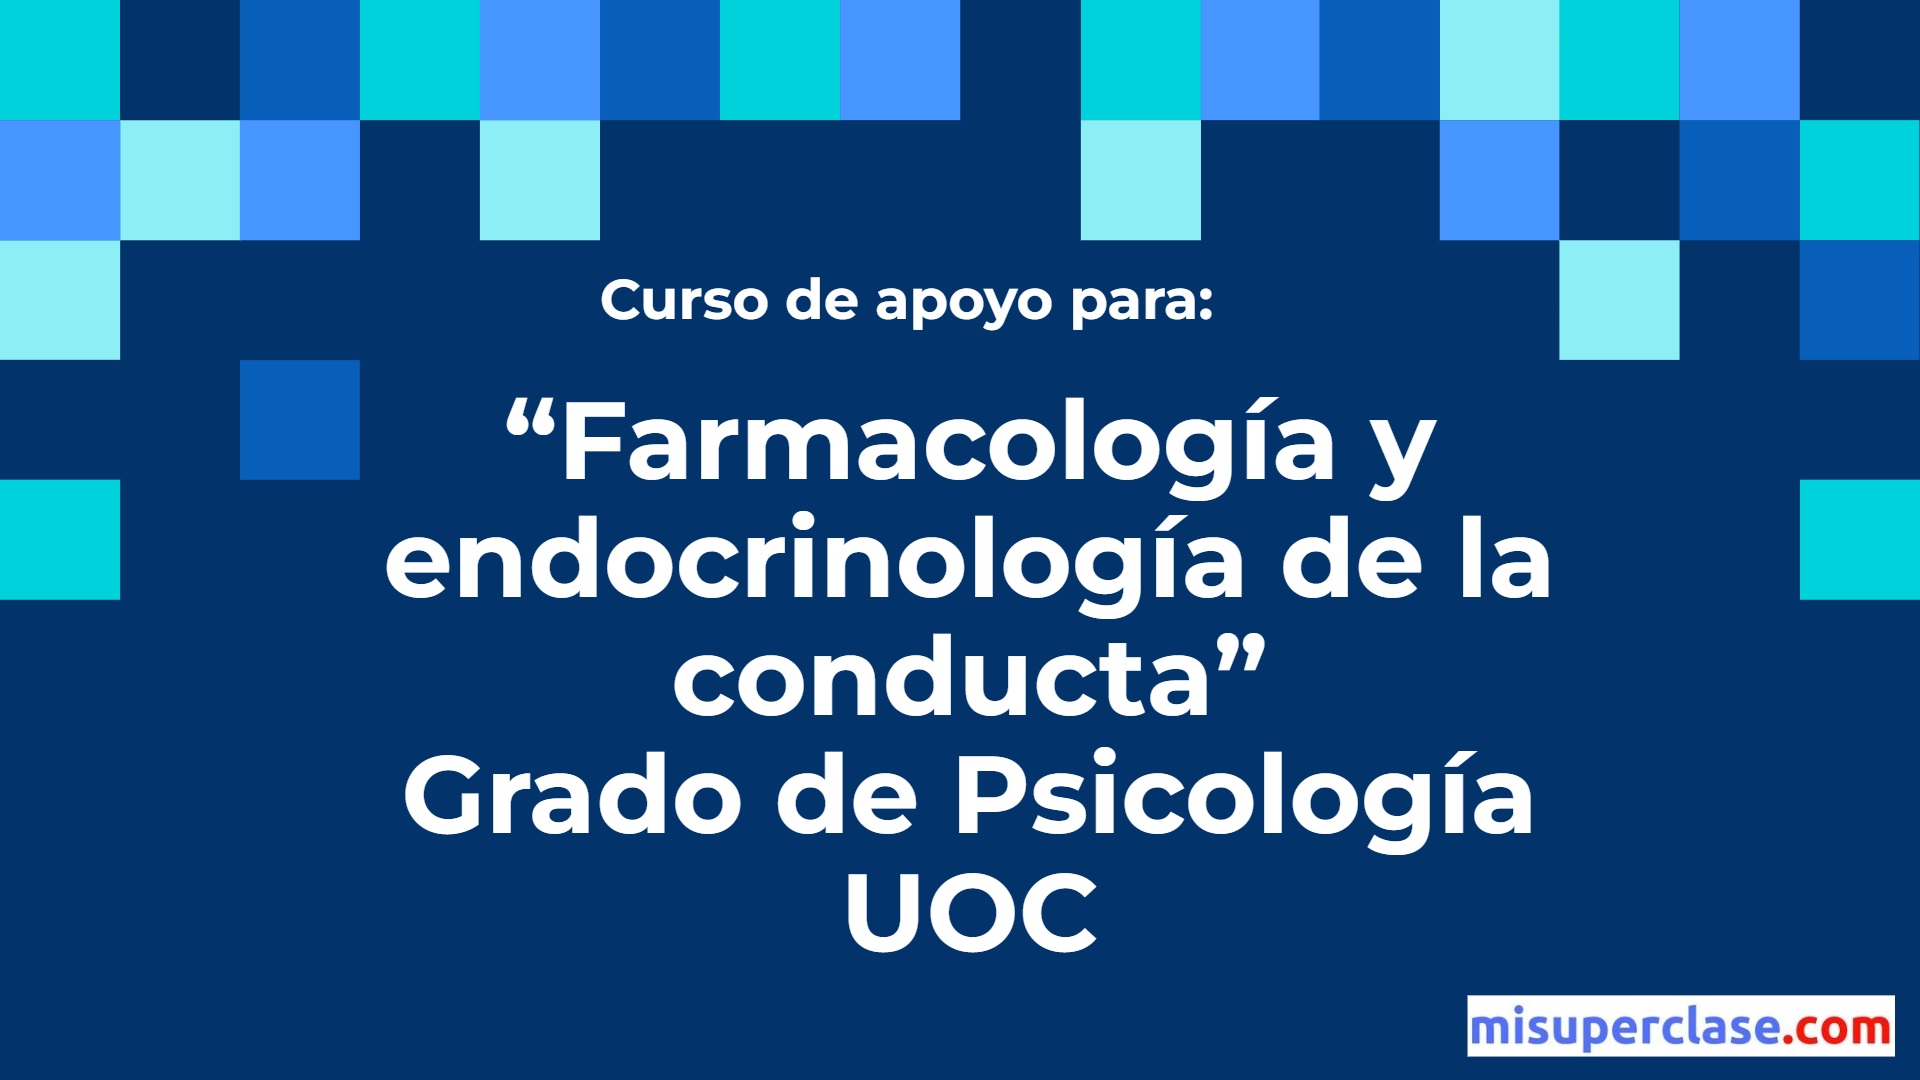 PEC Farmacología y Endocrinología de la Conducta. UOC